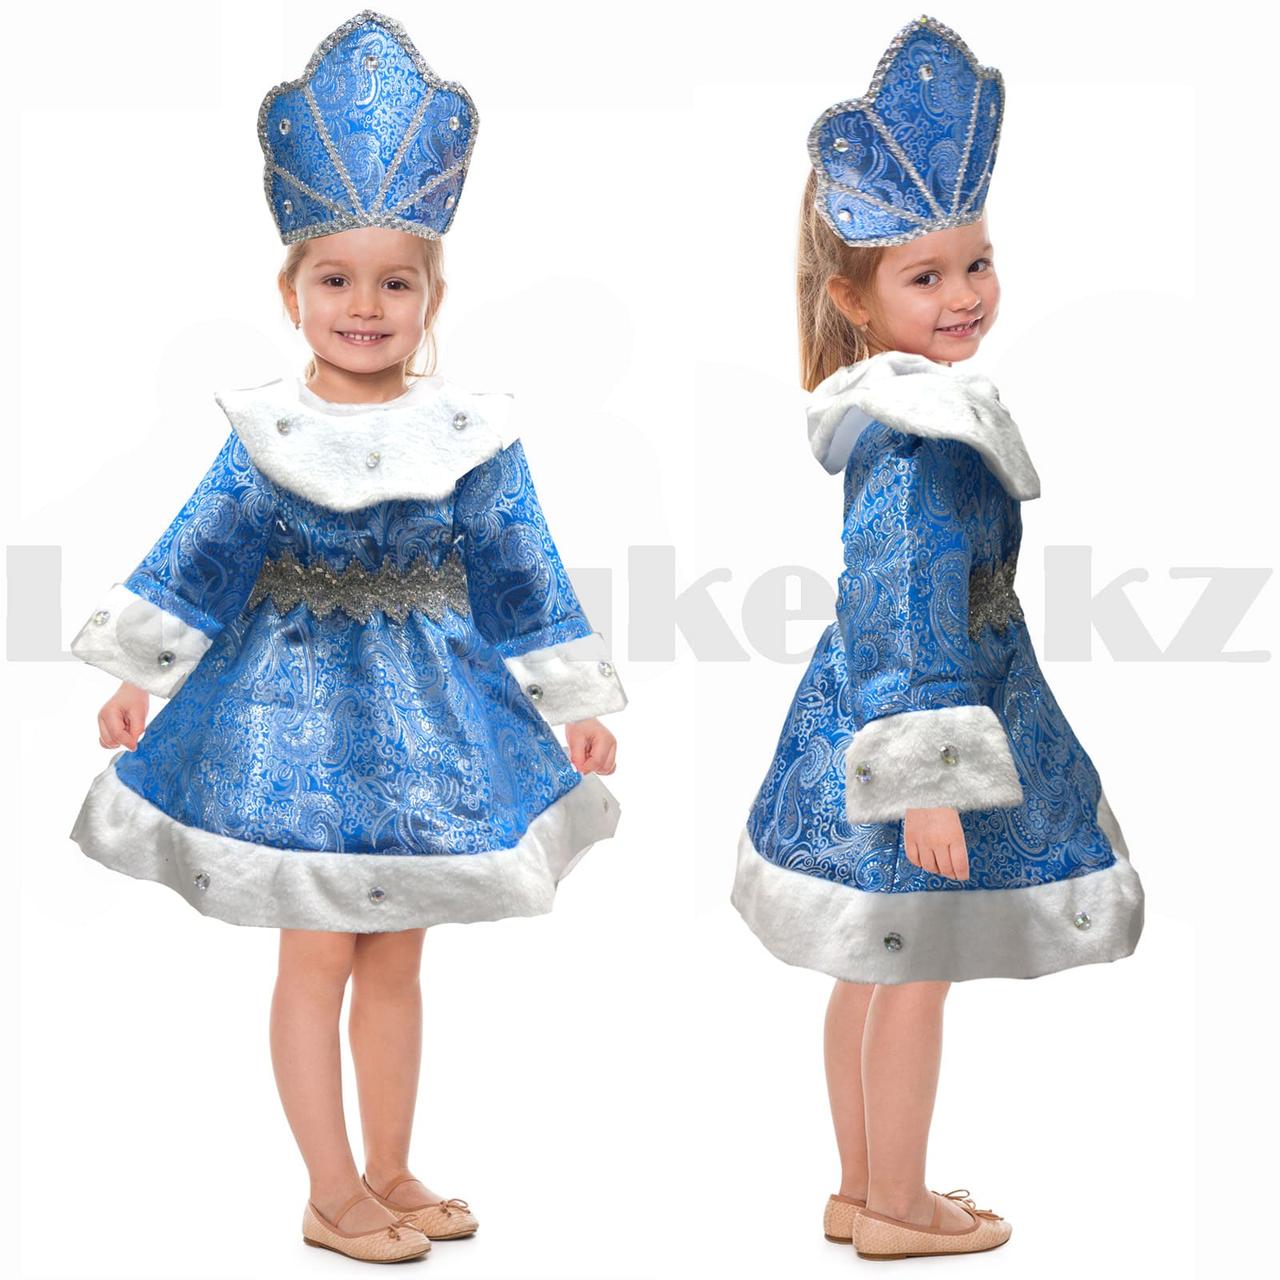 Костюм детский карнавальный Снежная королева с кристалами синий с металлическим отблеском